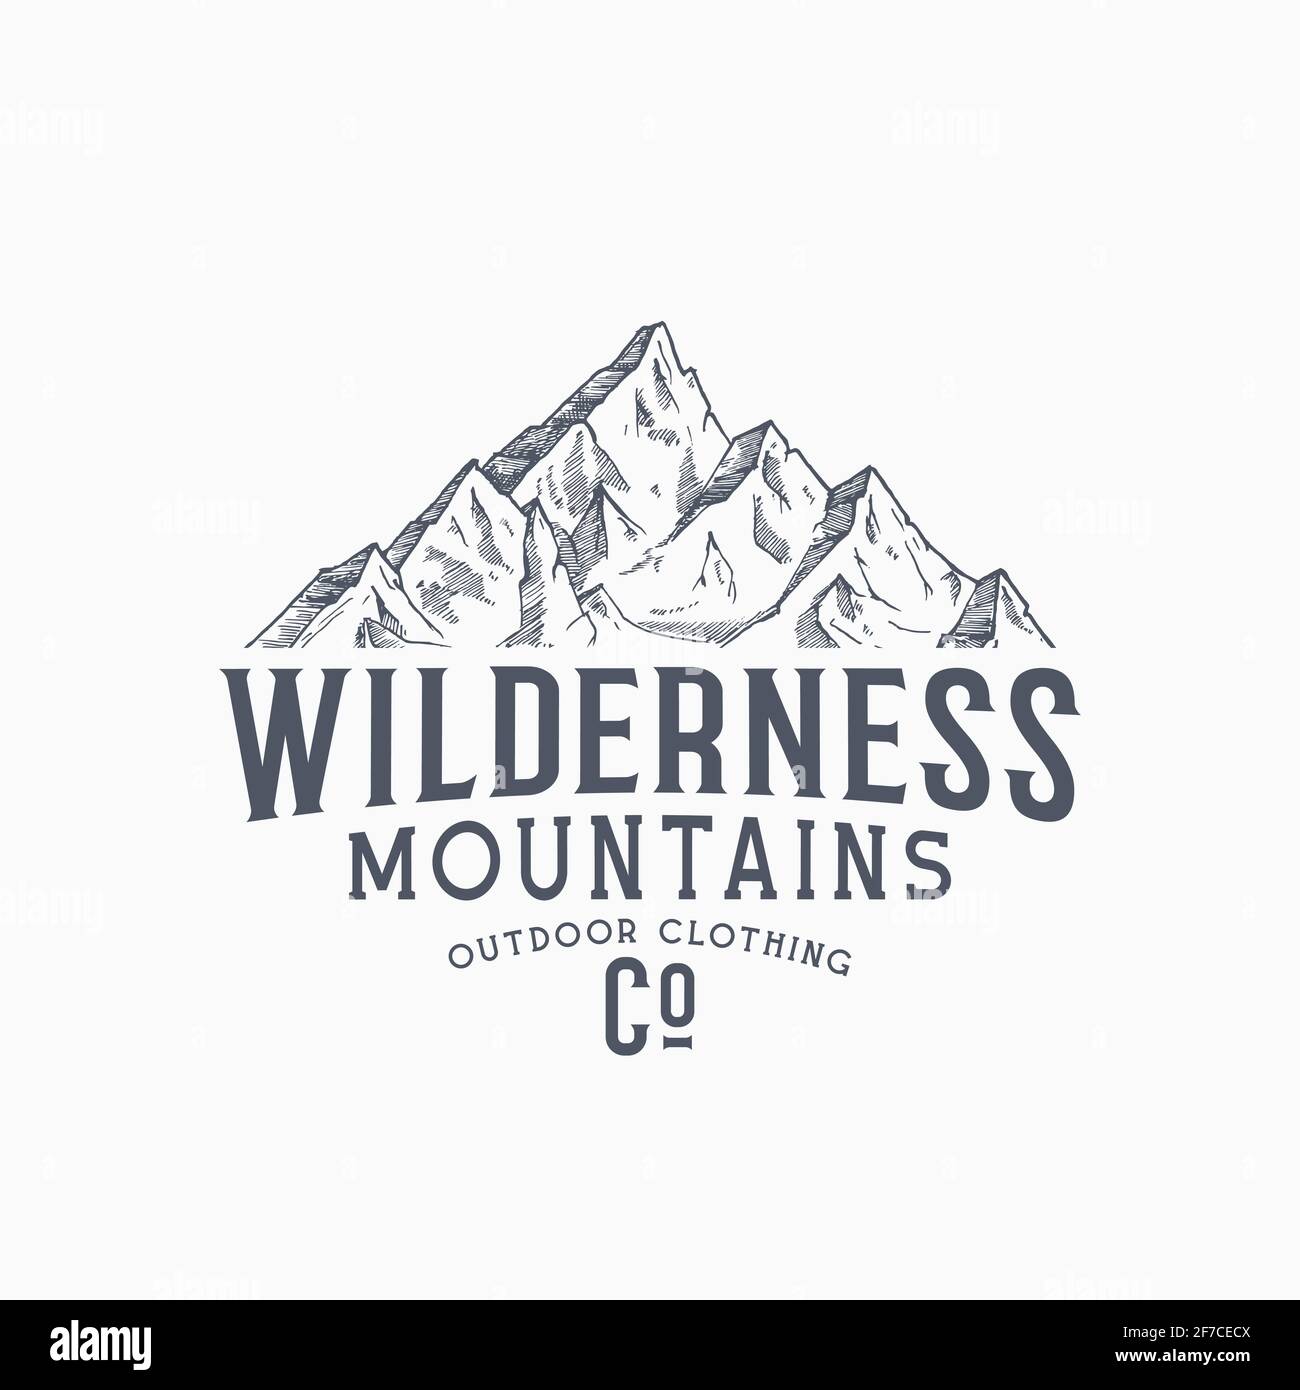 logo caccia montagna adatto per adesivi e serigrafia 3586541 Arte